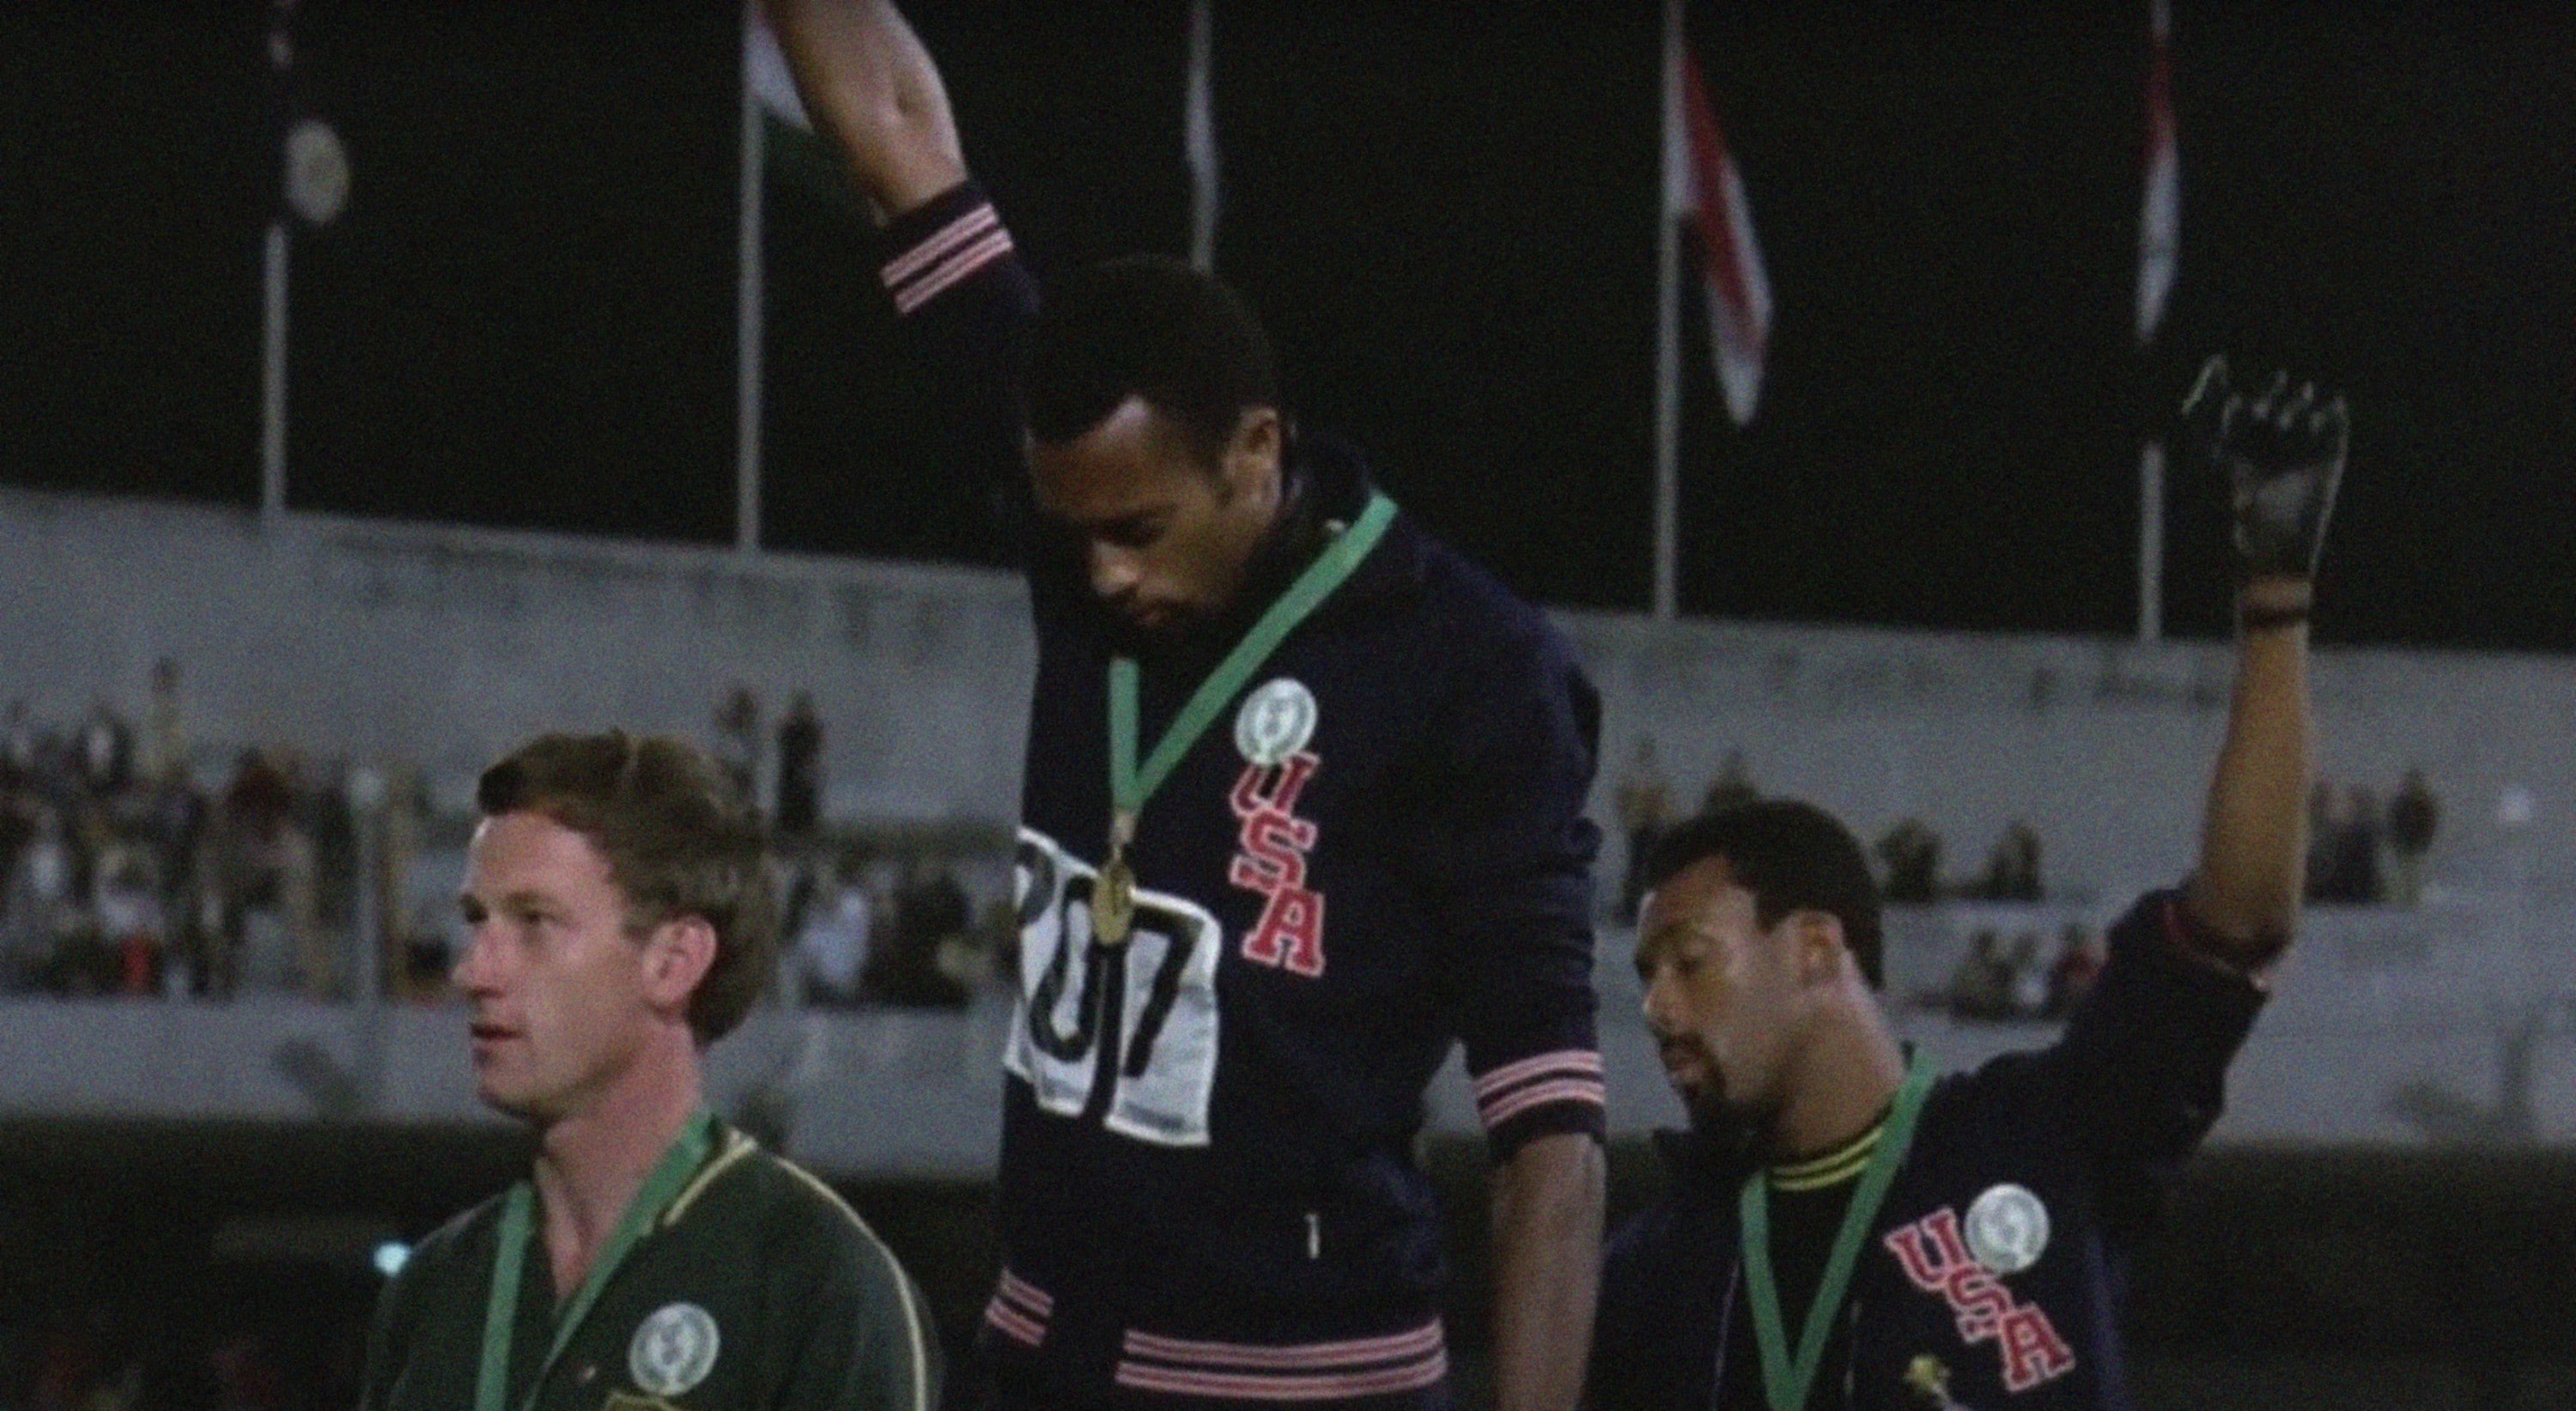 La versione a colori della famosa immagine scattata dal fotografo John Dominis e relativa al gesto di protesta dei due atleti afroamericani 